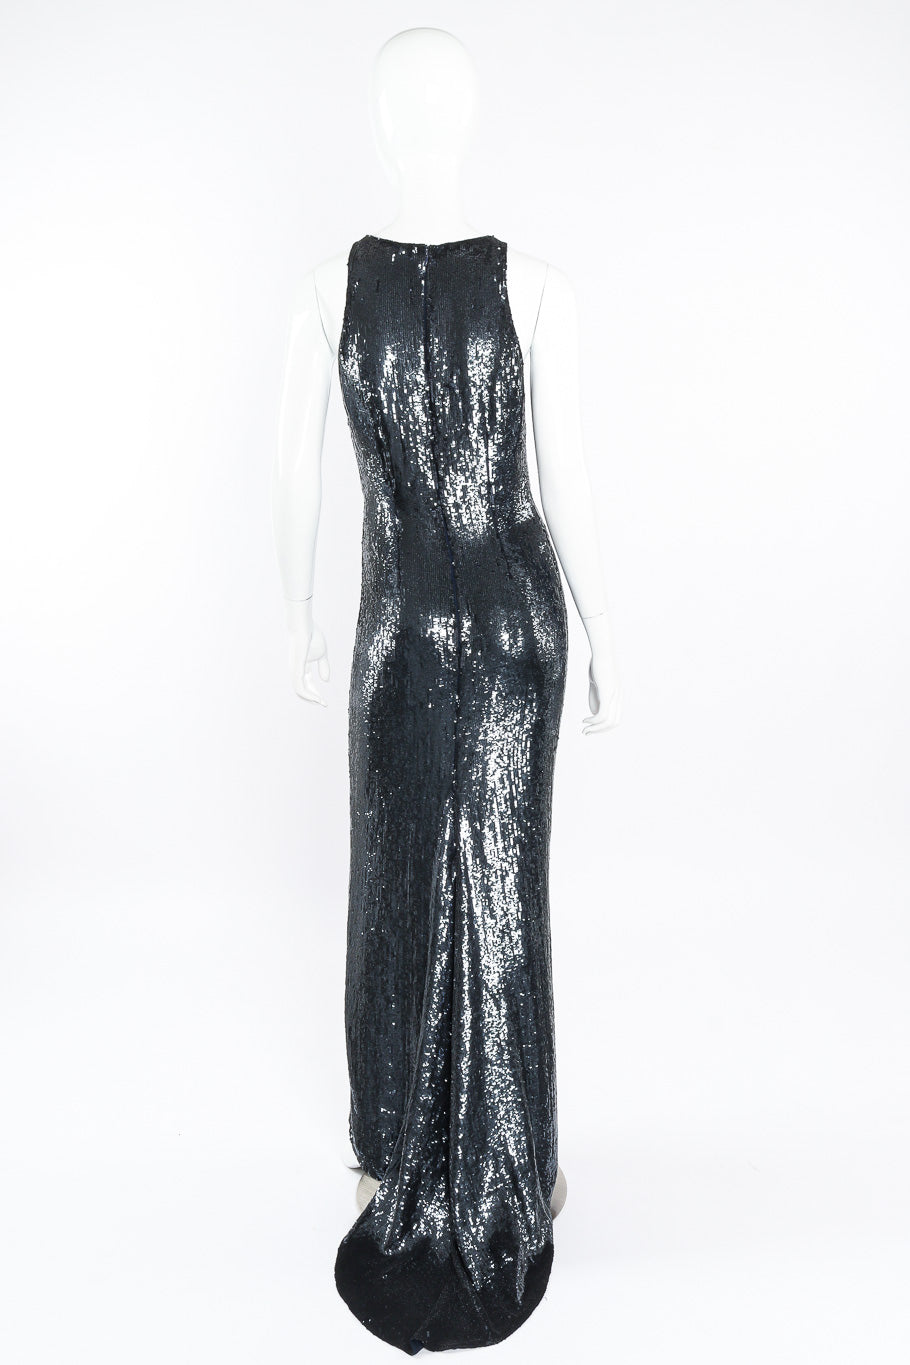 Sequin gown by Pamela Dennis on mannequin back @recessla